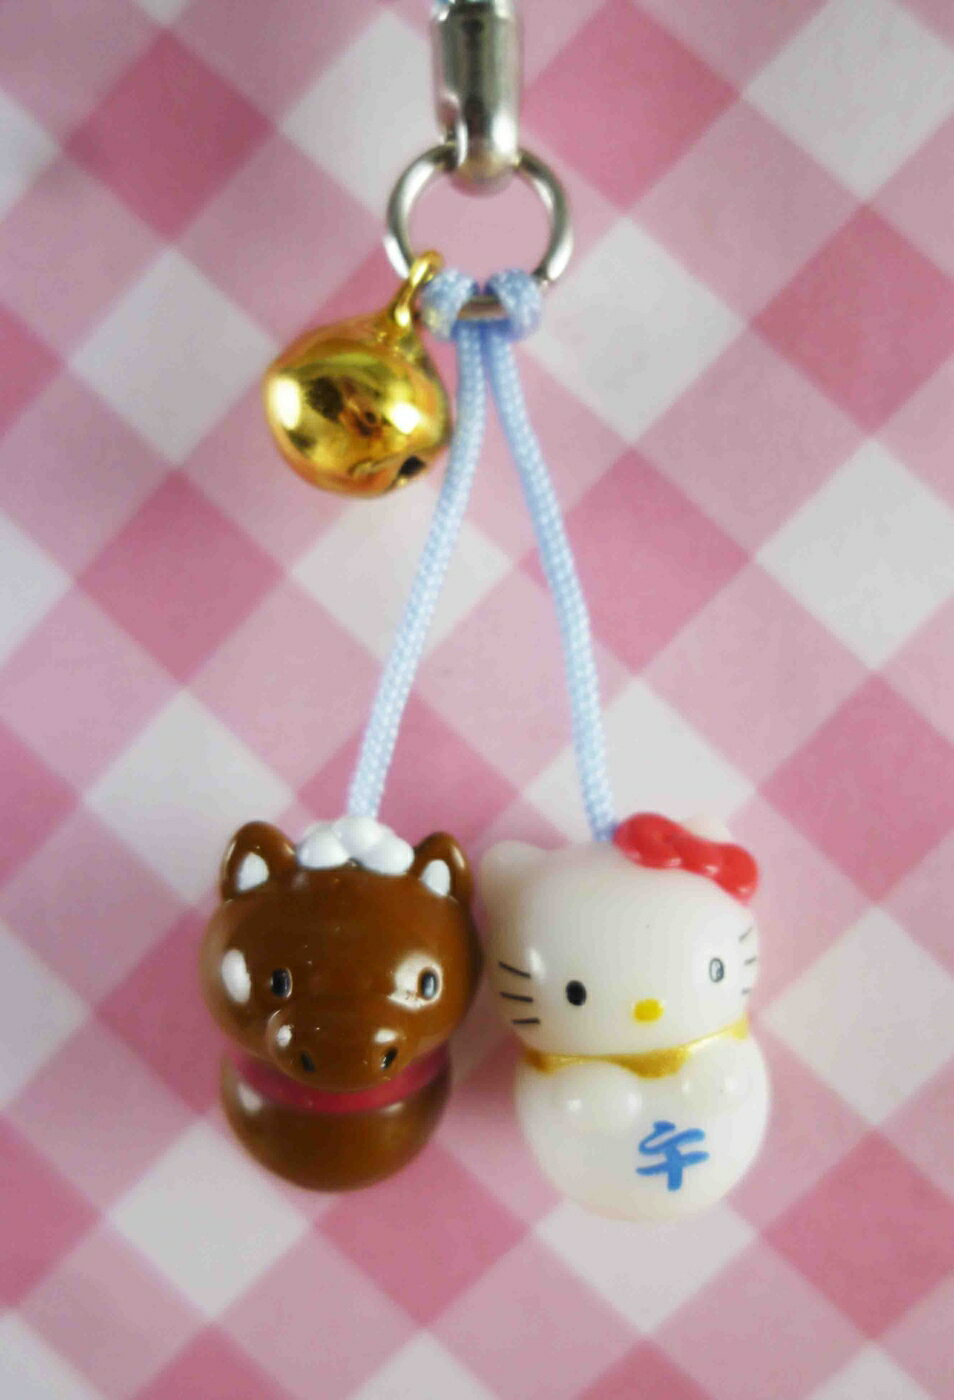 【震撼精品百貨】Hello Kitty 凱蒂貓 限定版手機吊飾-午馬 震撼日式精品百貨